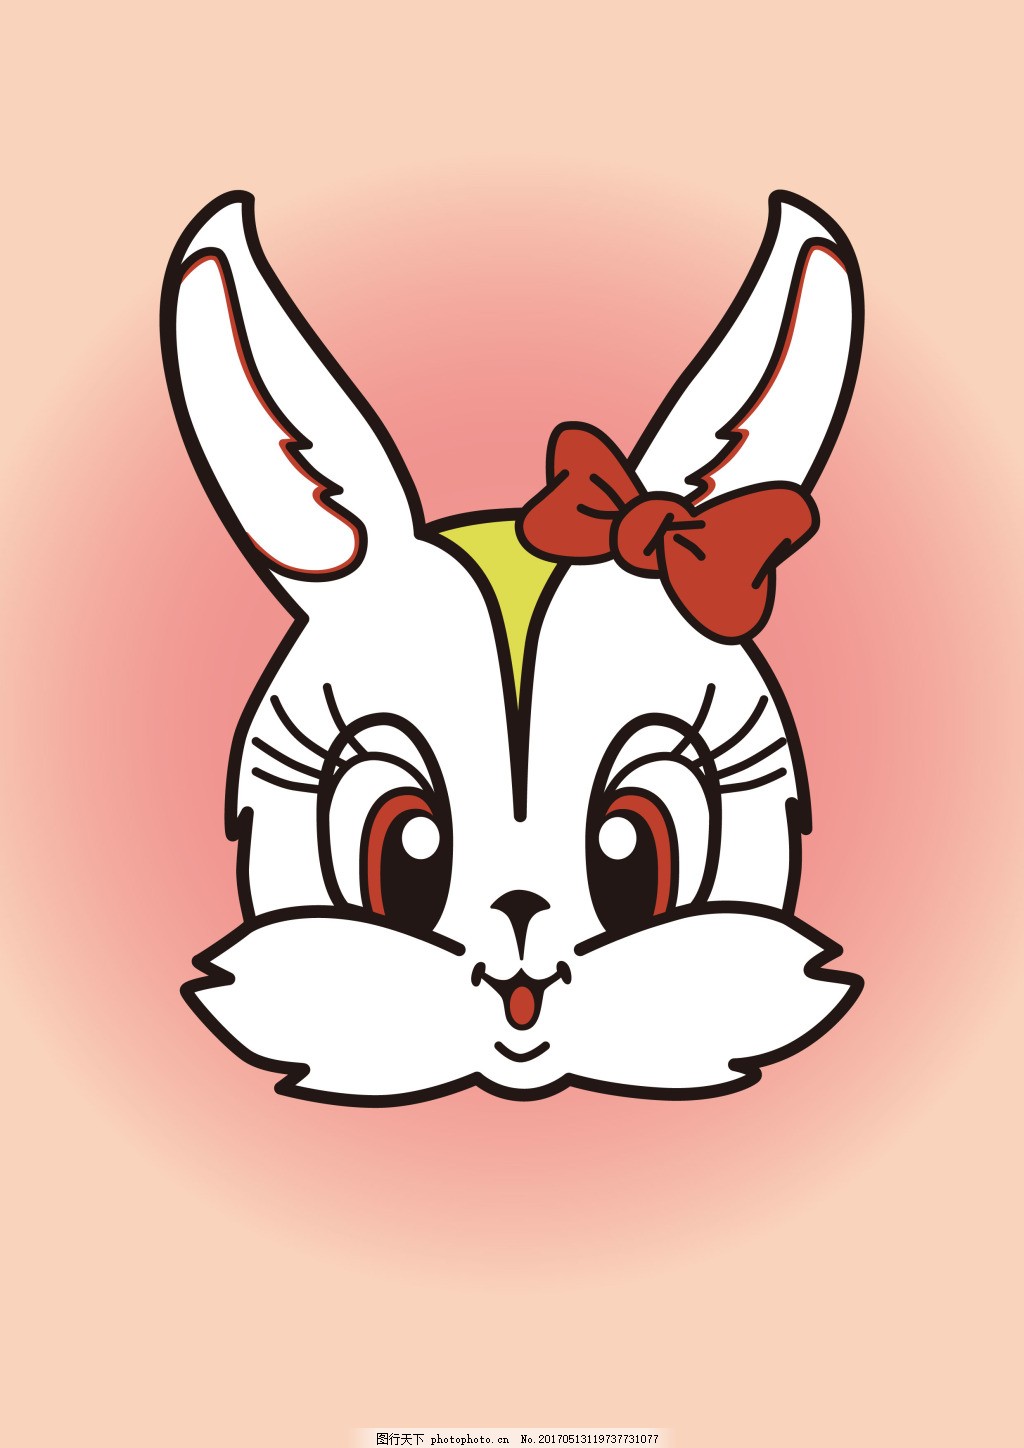 卡通可爱风小兔子动物头像图片_单张头像_头像屋